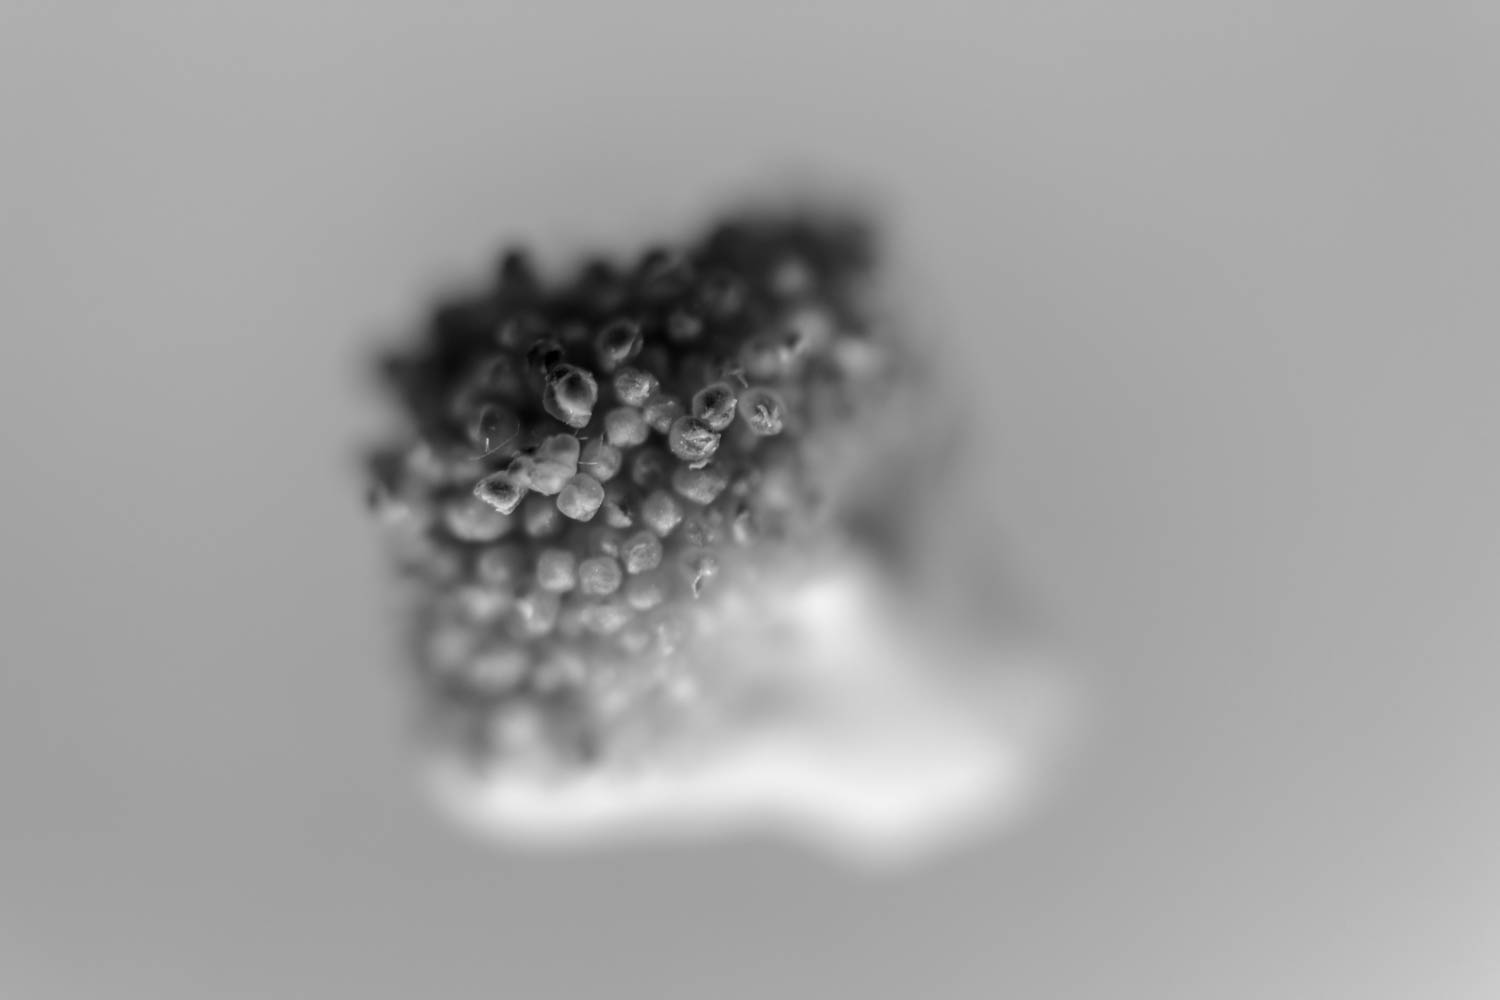 Broccoli black & white picture.